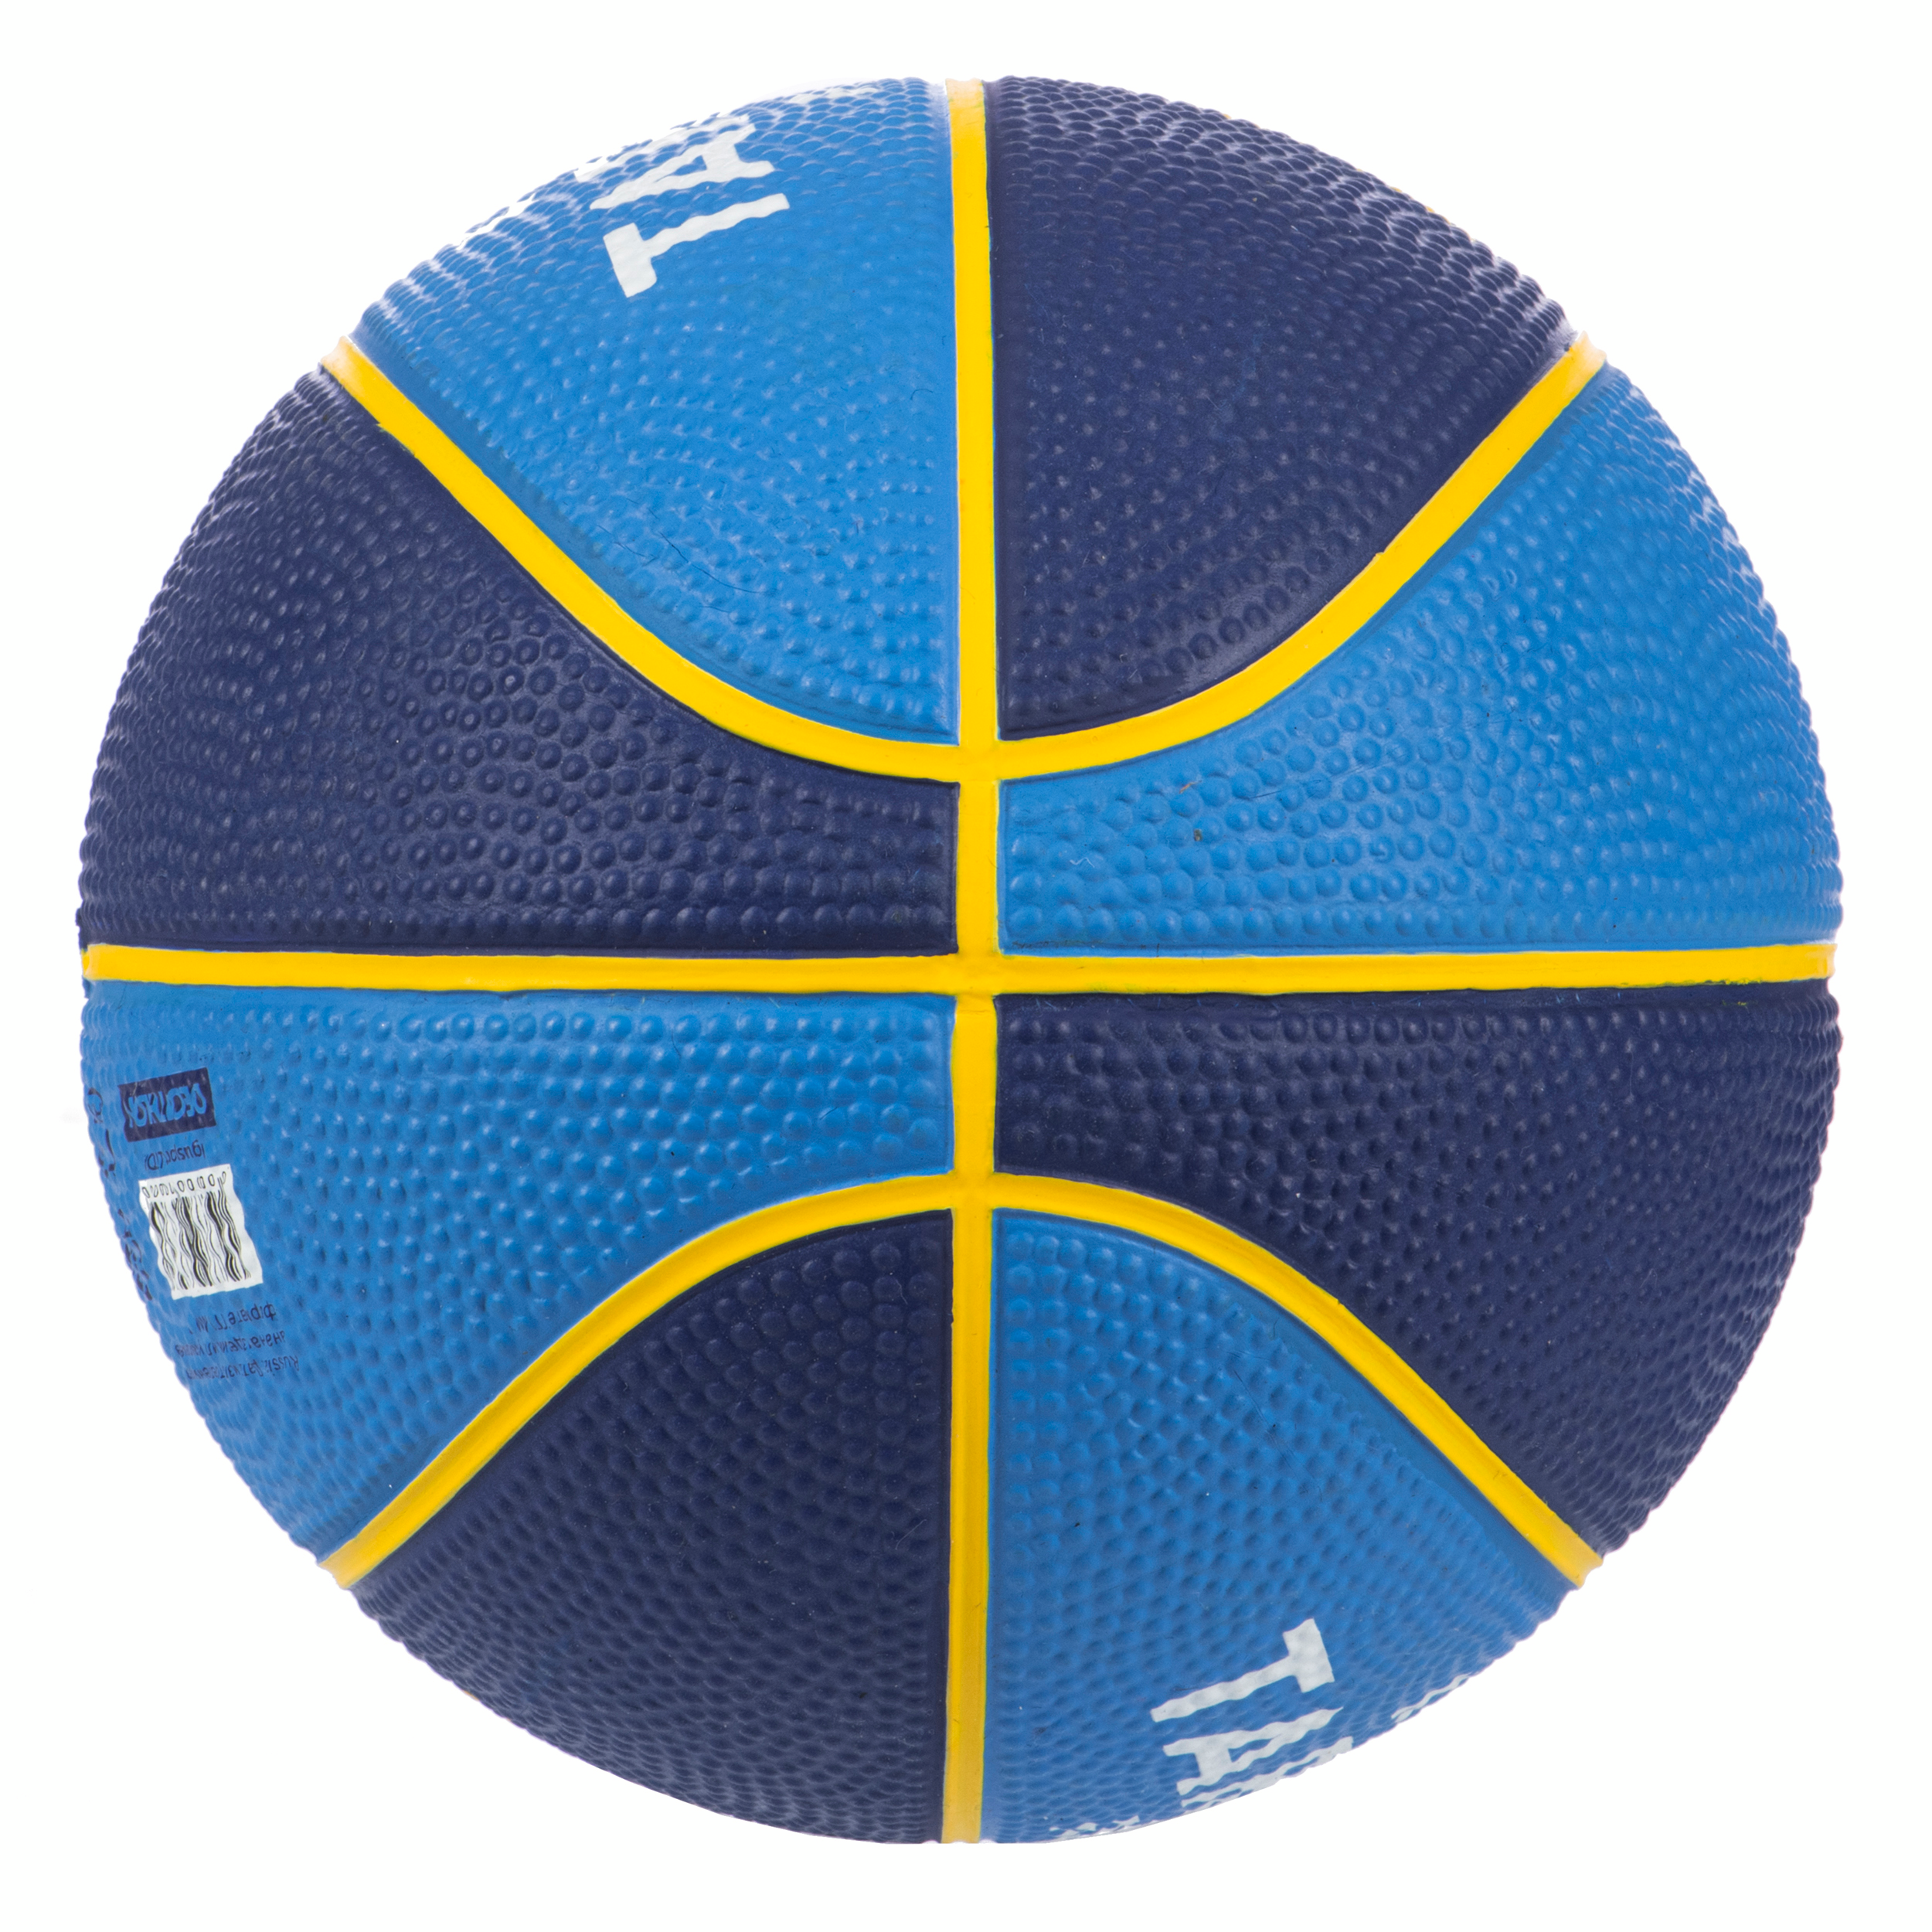 Mini ballon de basketball taille 1 Enfant - K100 Rubber bleu pour les clubs  et collectivités